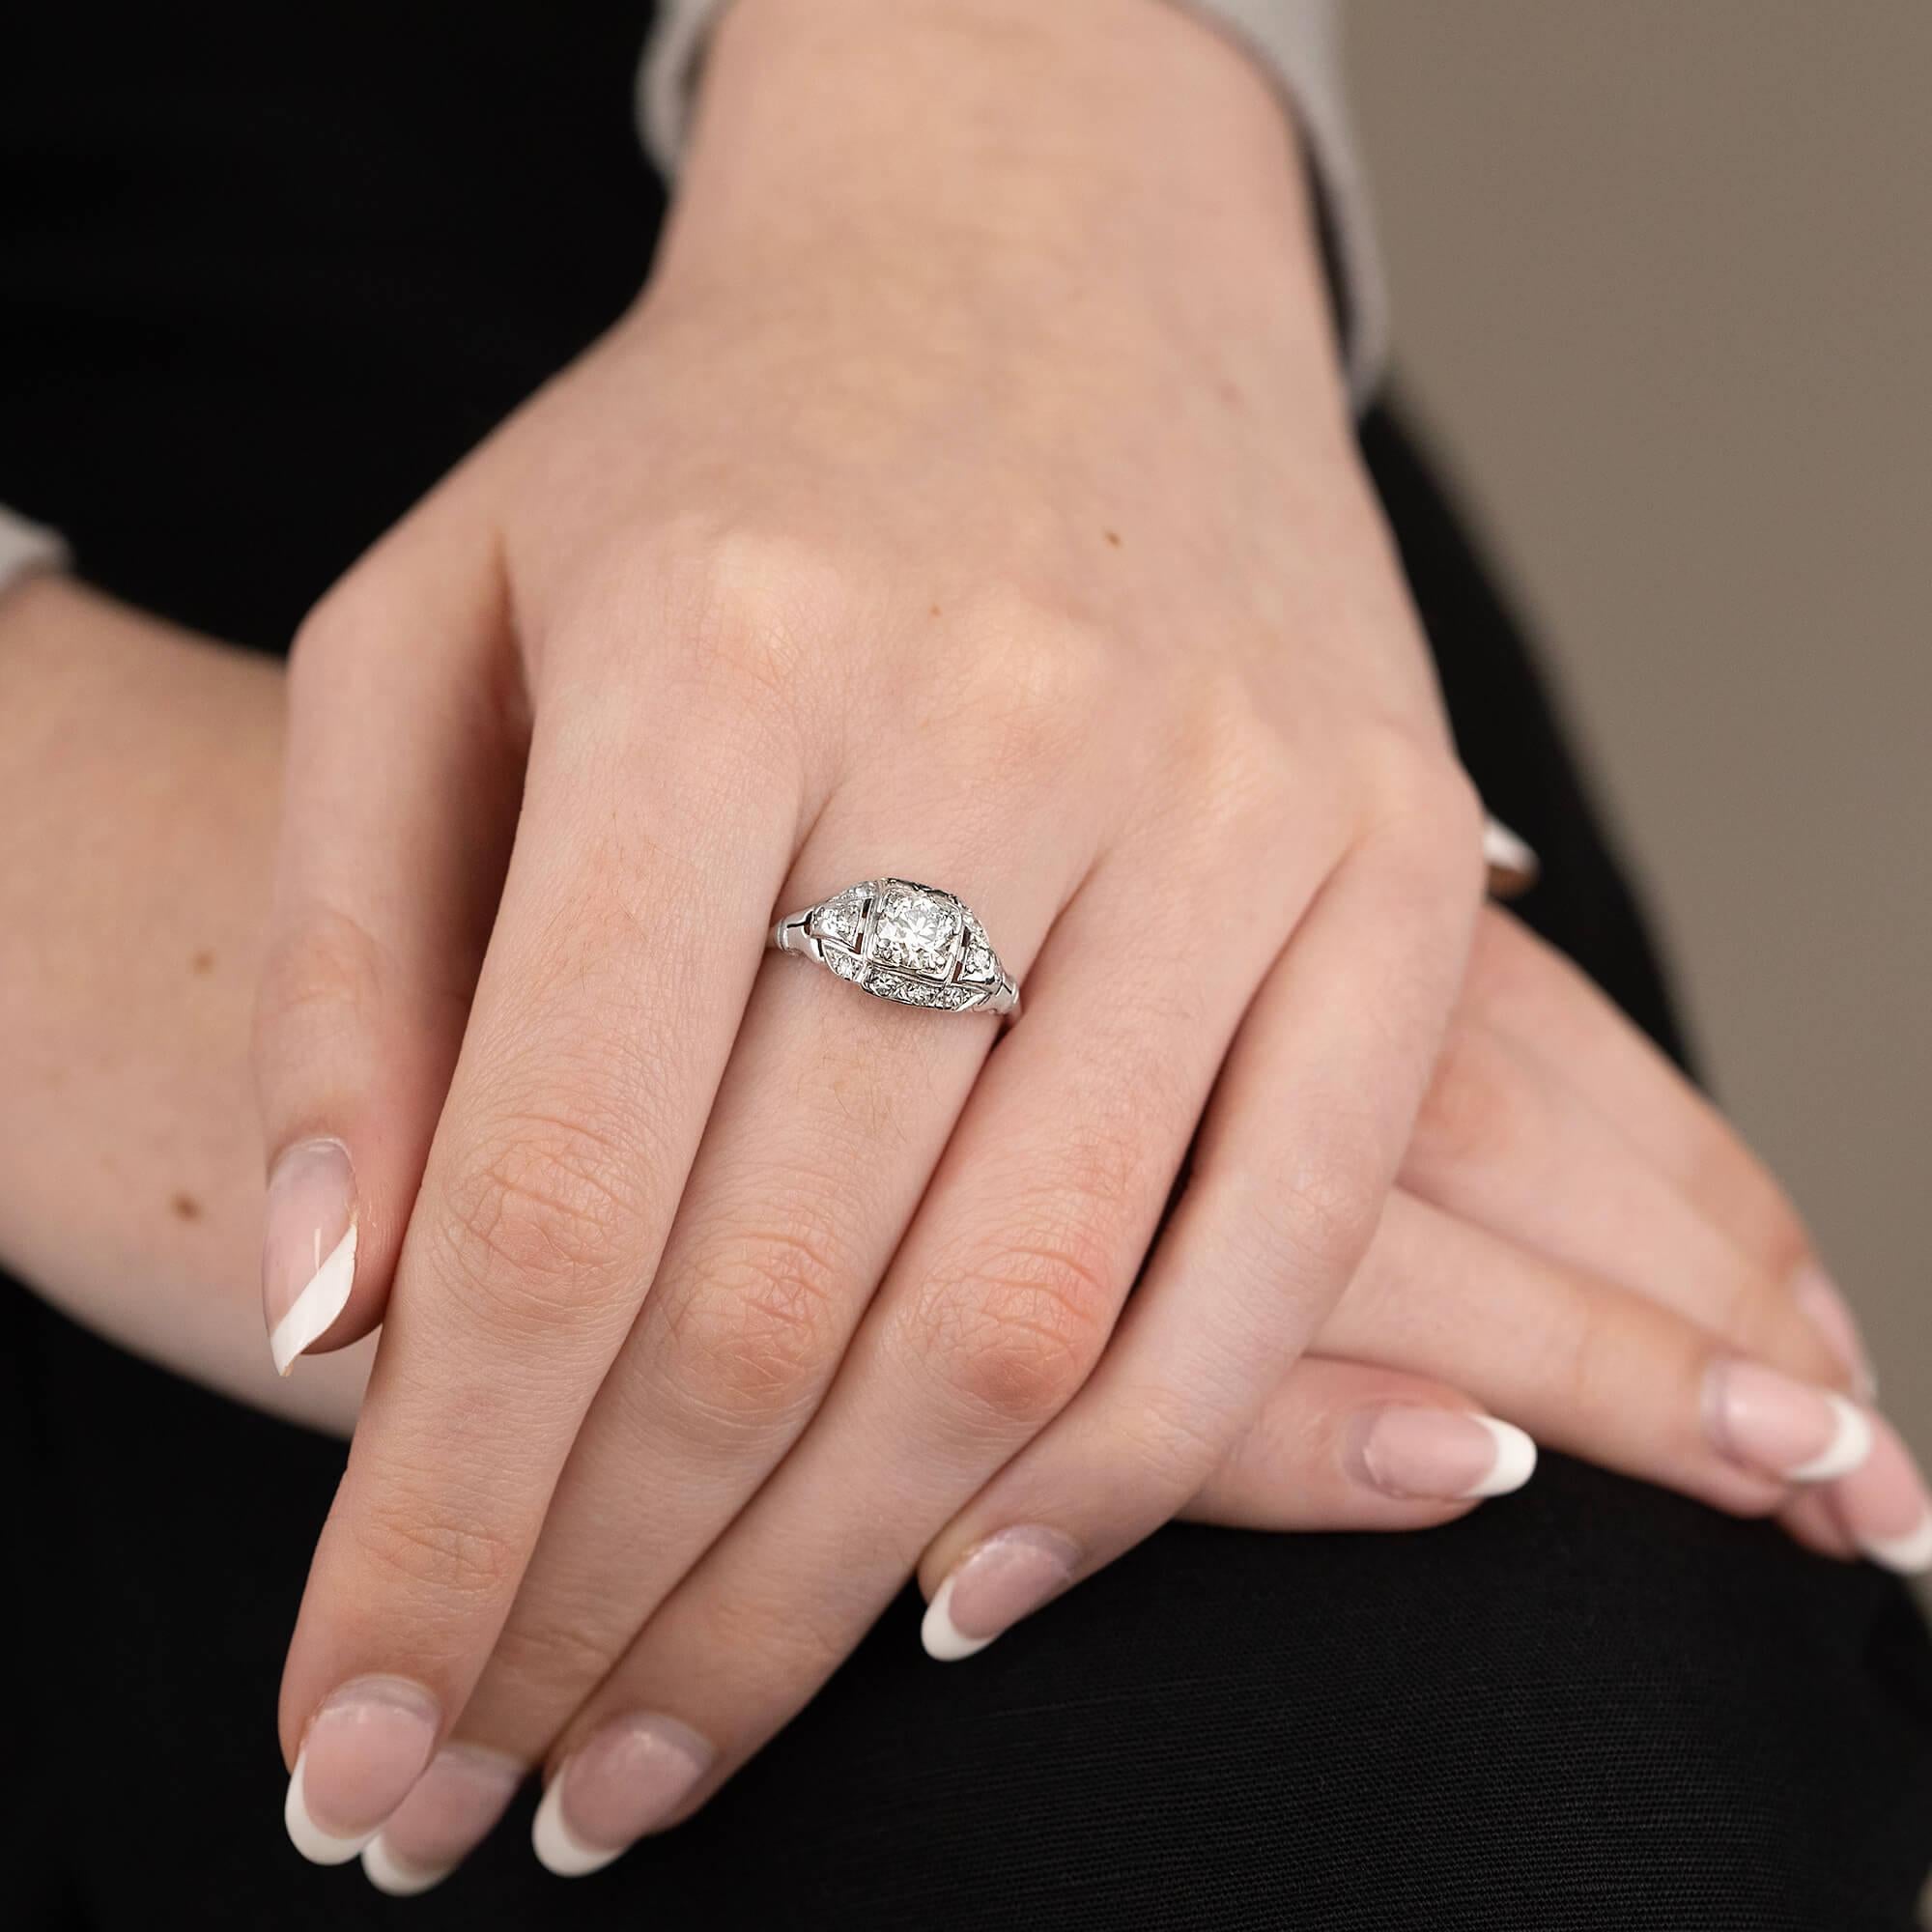 Dieser Art-Déco-Ring ist aus Platin gefertigt und mit gewölbten und körnig gefassten Diamanten im Brillant- und Einzelschliff besetzt. Ein Stück, das seiner Zeit treu ist.

Diamant: Ein 5,55 mm großer Brillant im Übergangsschliff, Farbe J-K,